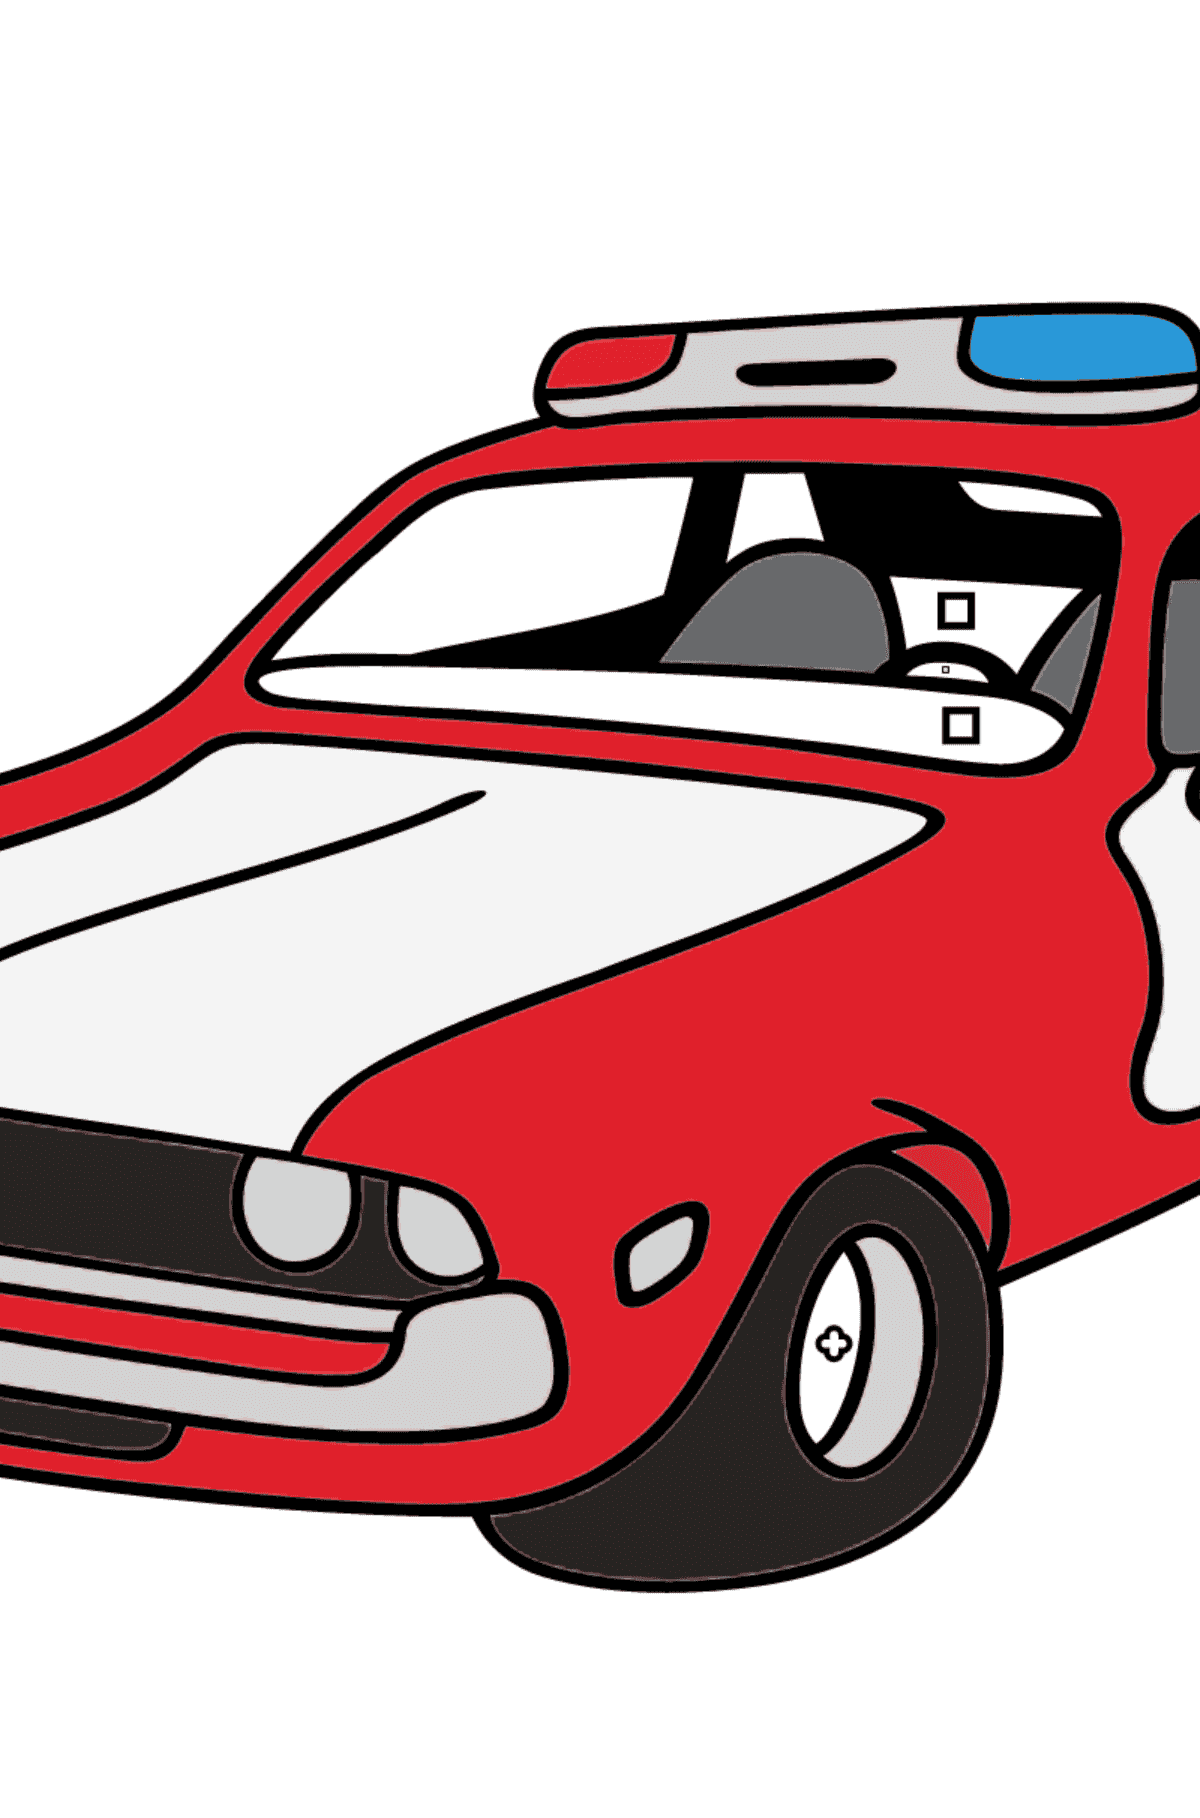 Разукрашка - Машина Полиция - Картинка высокого качества для Детей